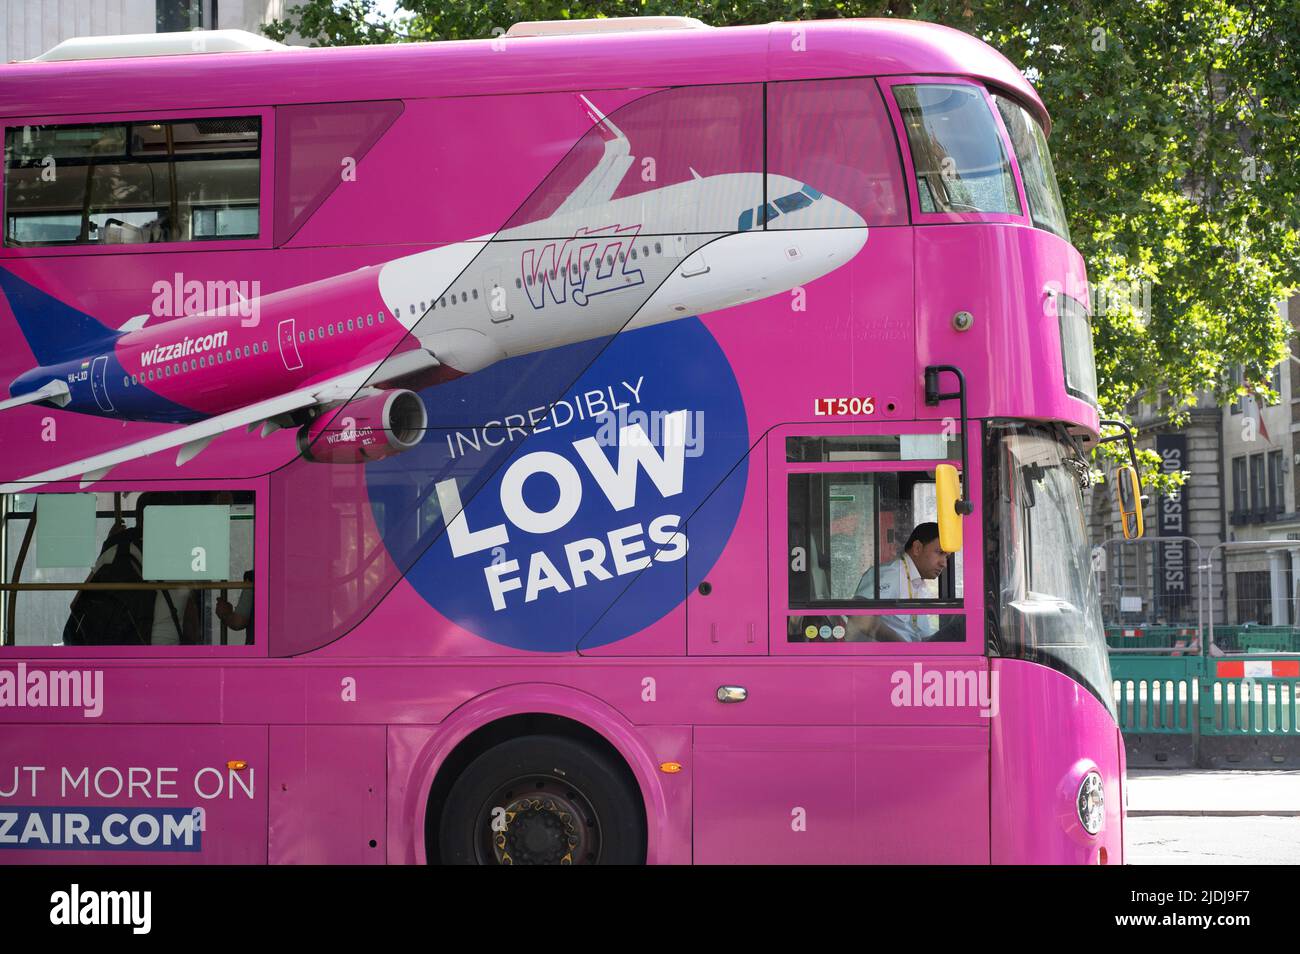 21 juin. Grève ferroviaire et souterraine à Londres. Bus à la station London Bridge, publicité Whizz Air. Banque D'Images